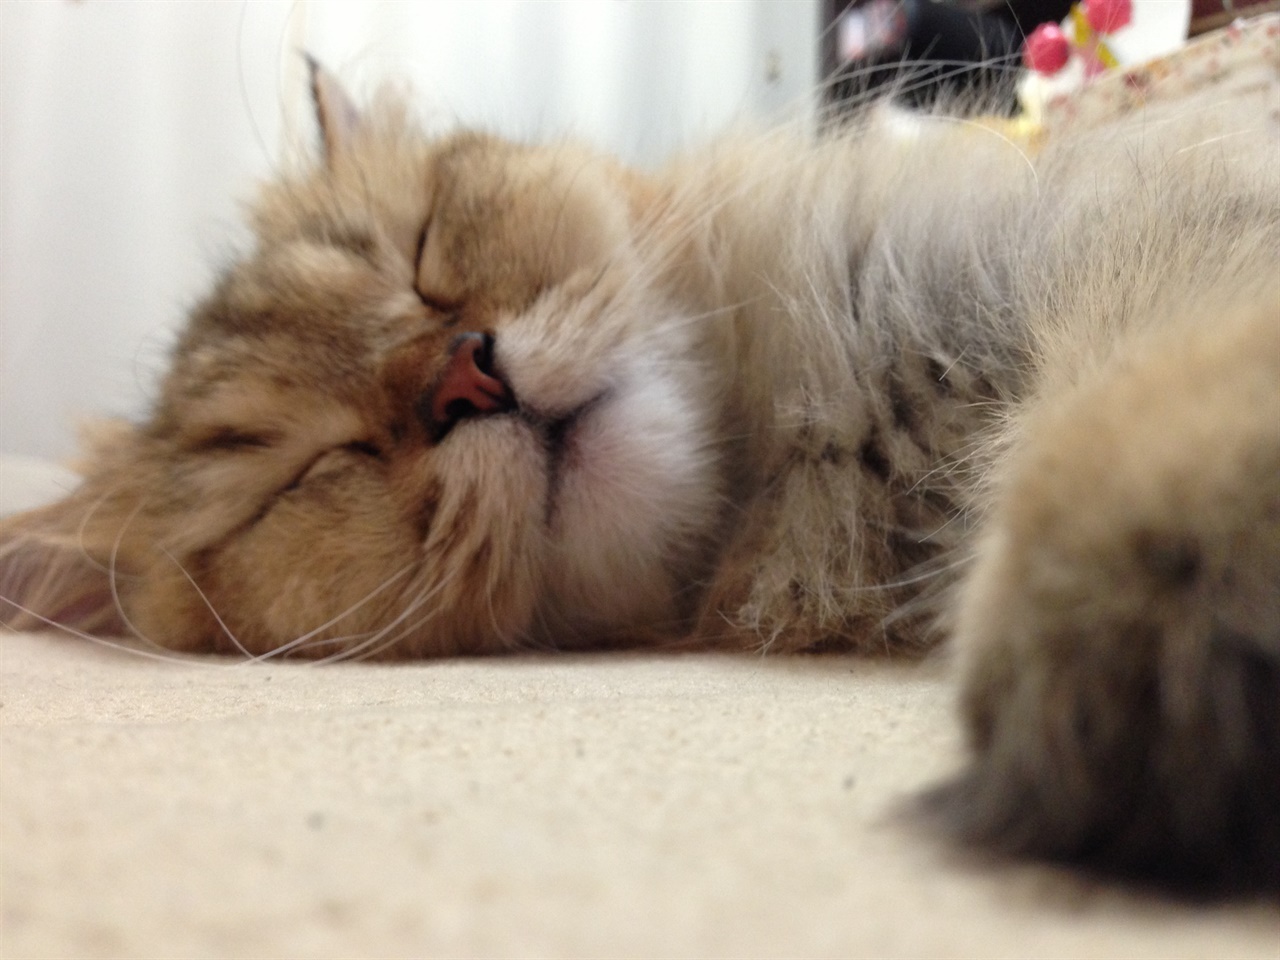 잠자는 고양이 나처럼 고양이도 불면증이 있을까? 너무 잘 잔다. 프로 수면러.